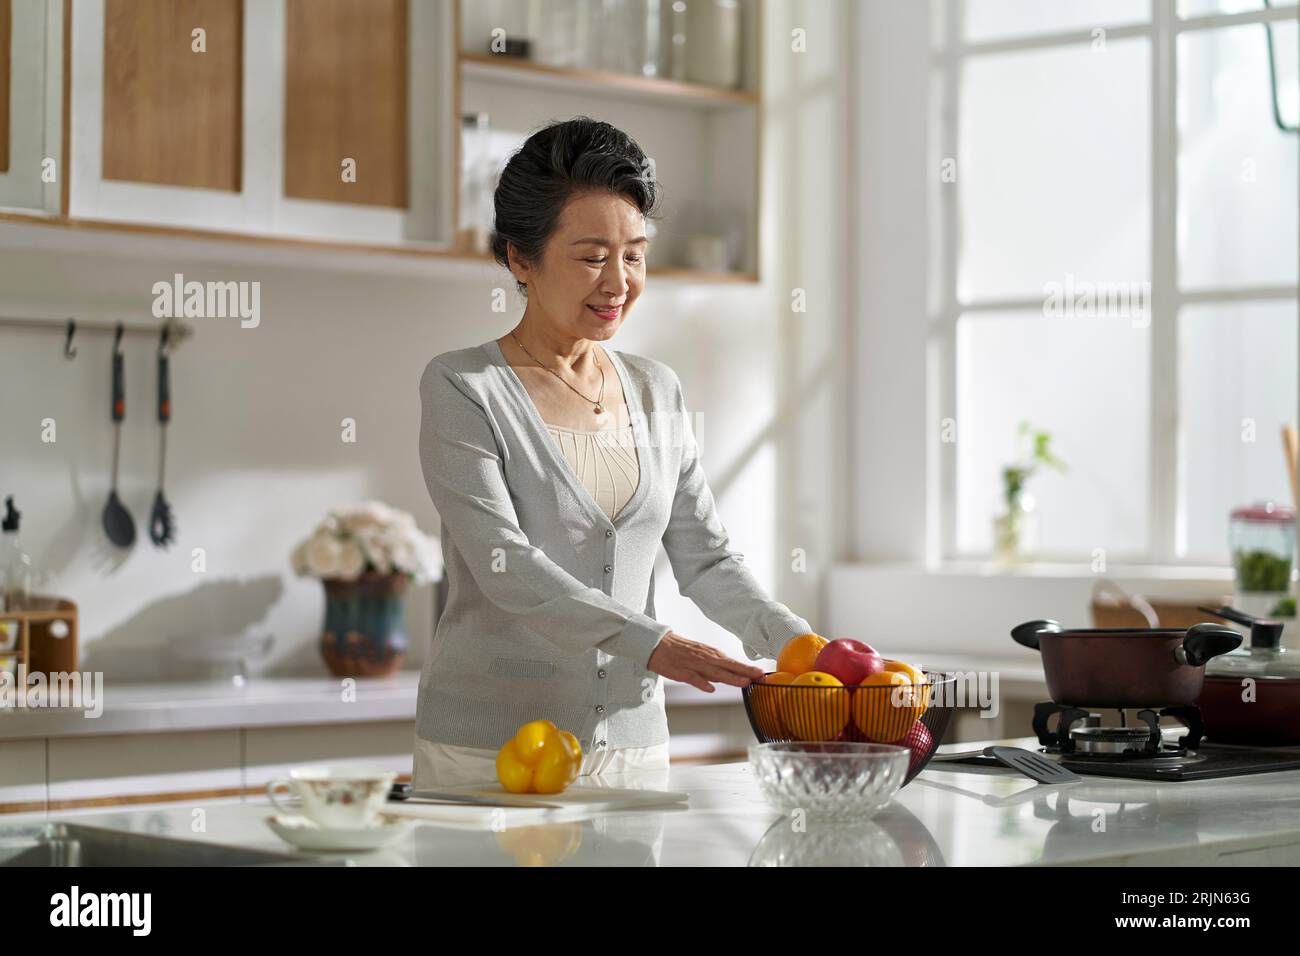 femme asiatique senior debout dans la cuisine moderne à la maison se préparant à préparer la nourriture Banque D'Images